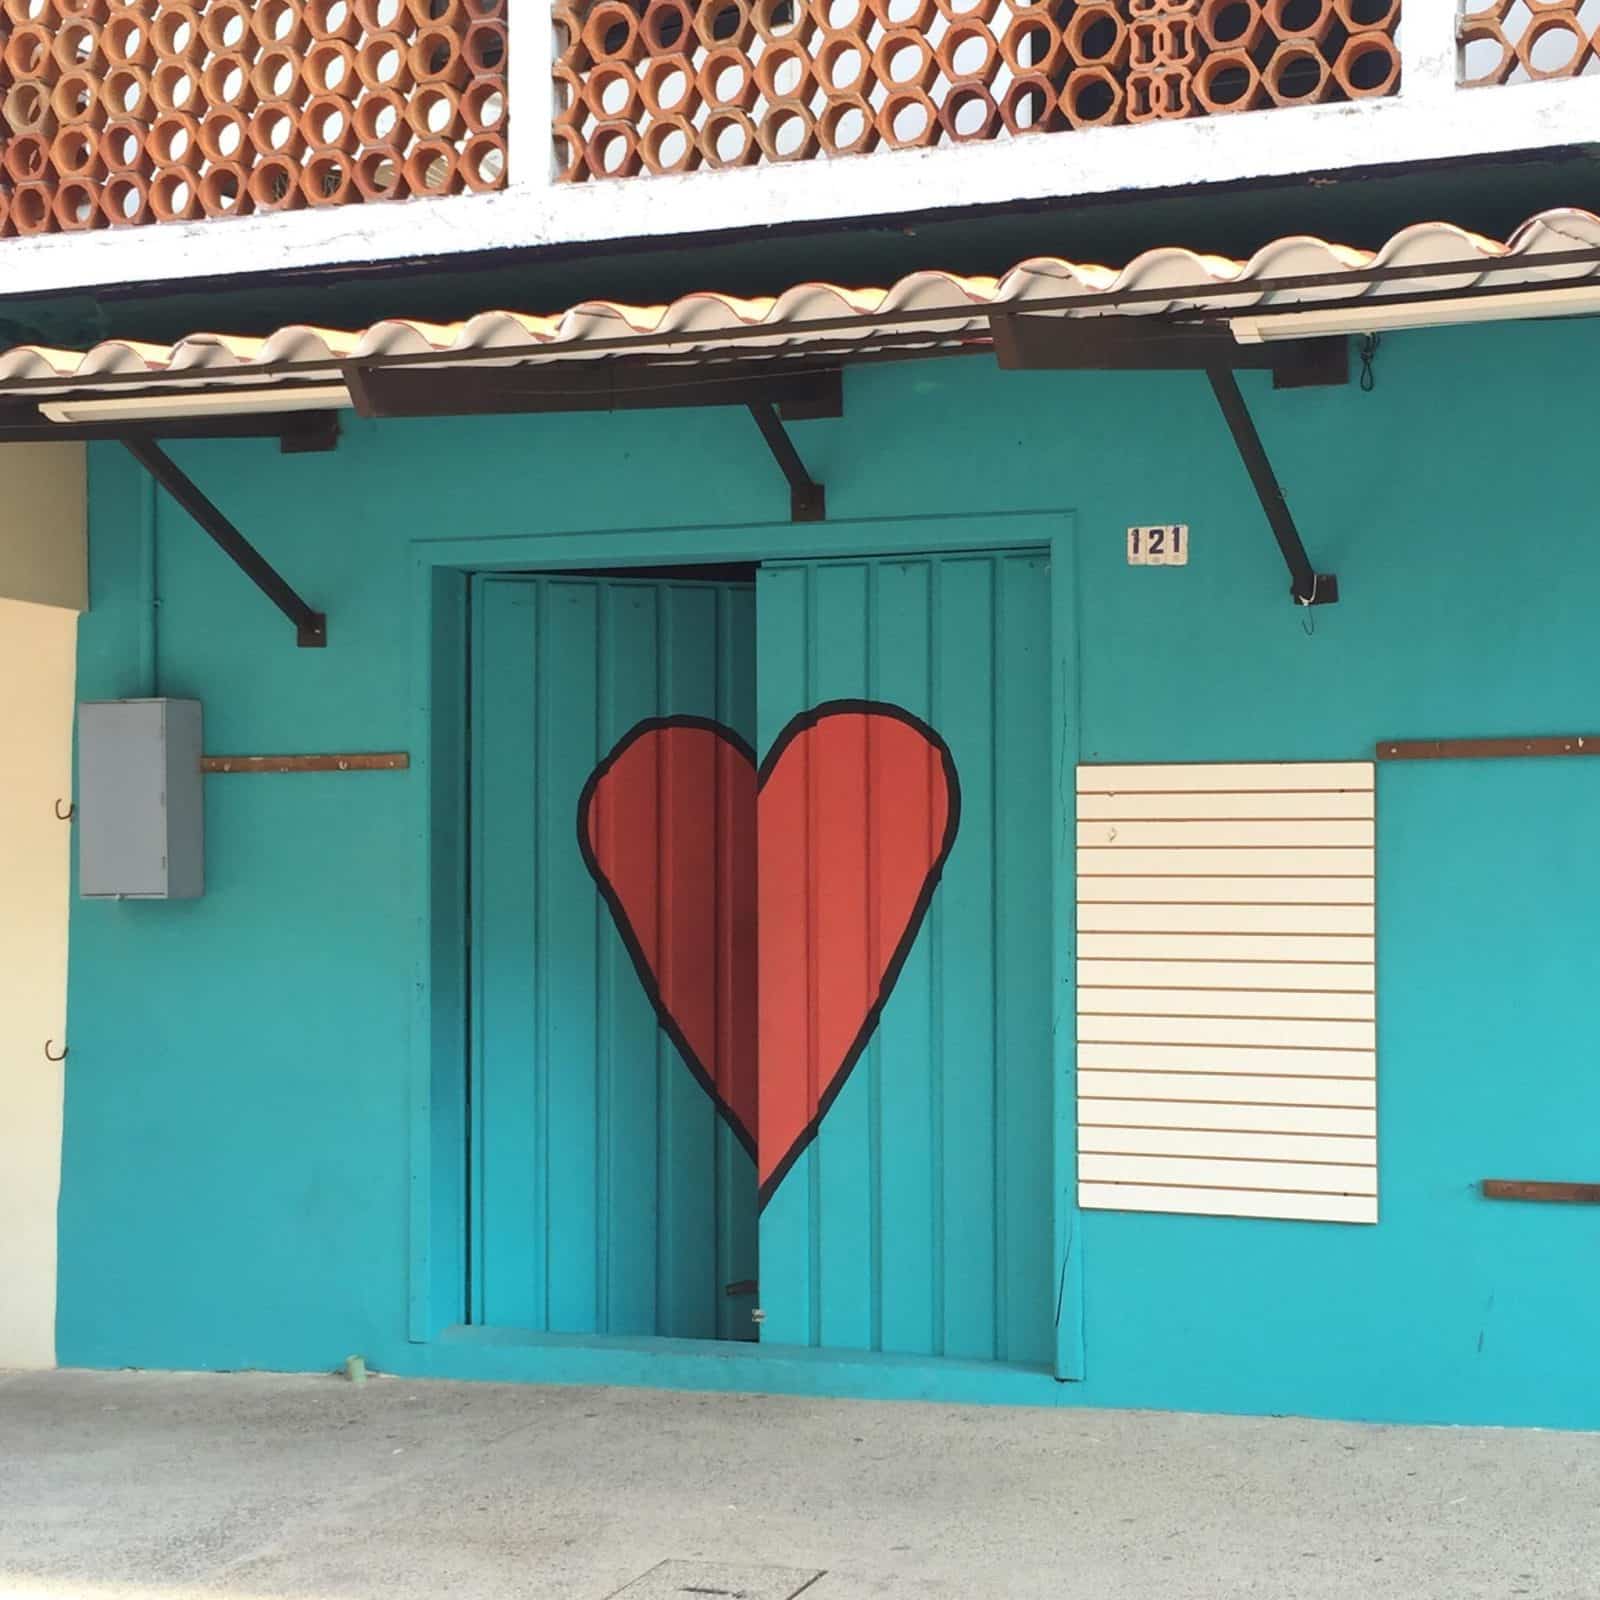 Heart Wall in Puerto Vallarta by Vince.